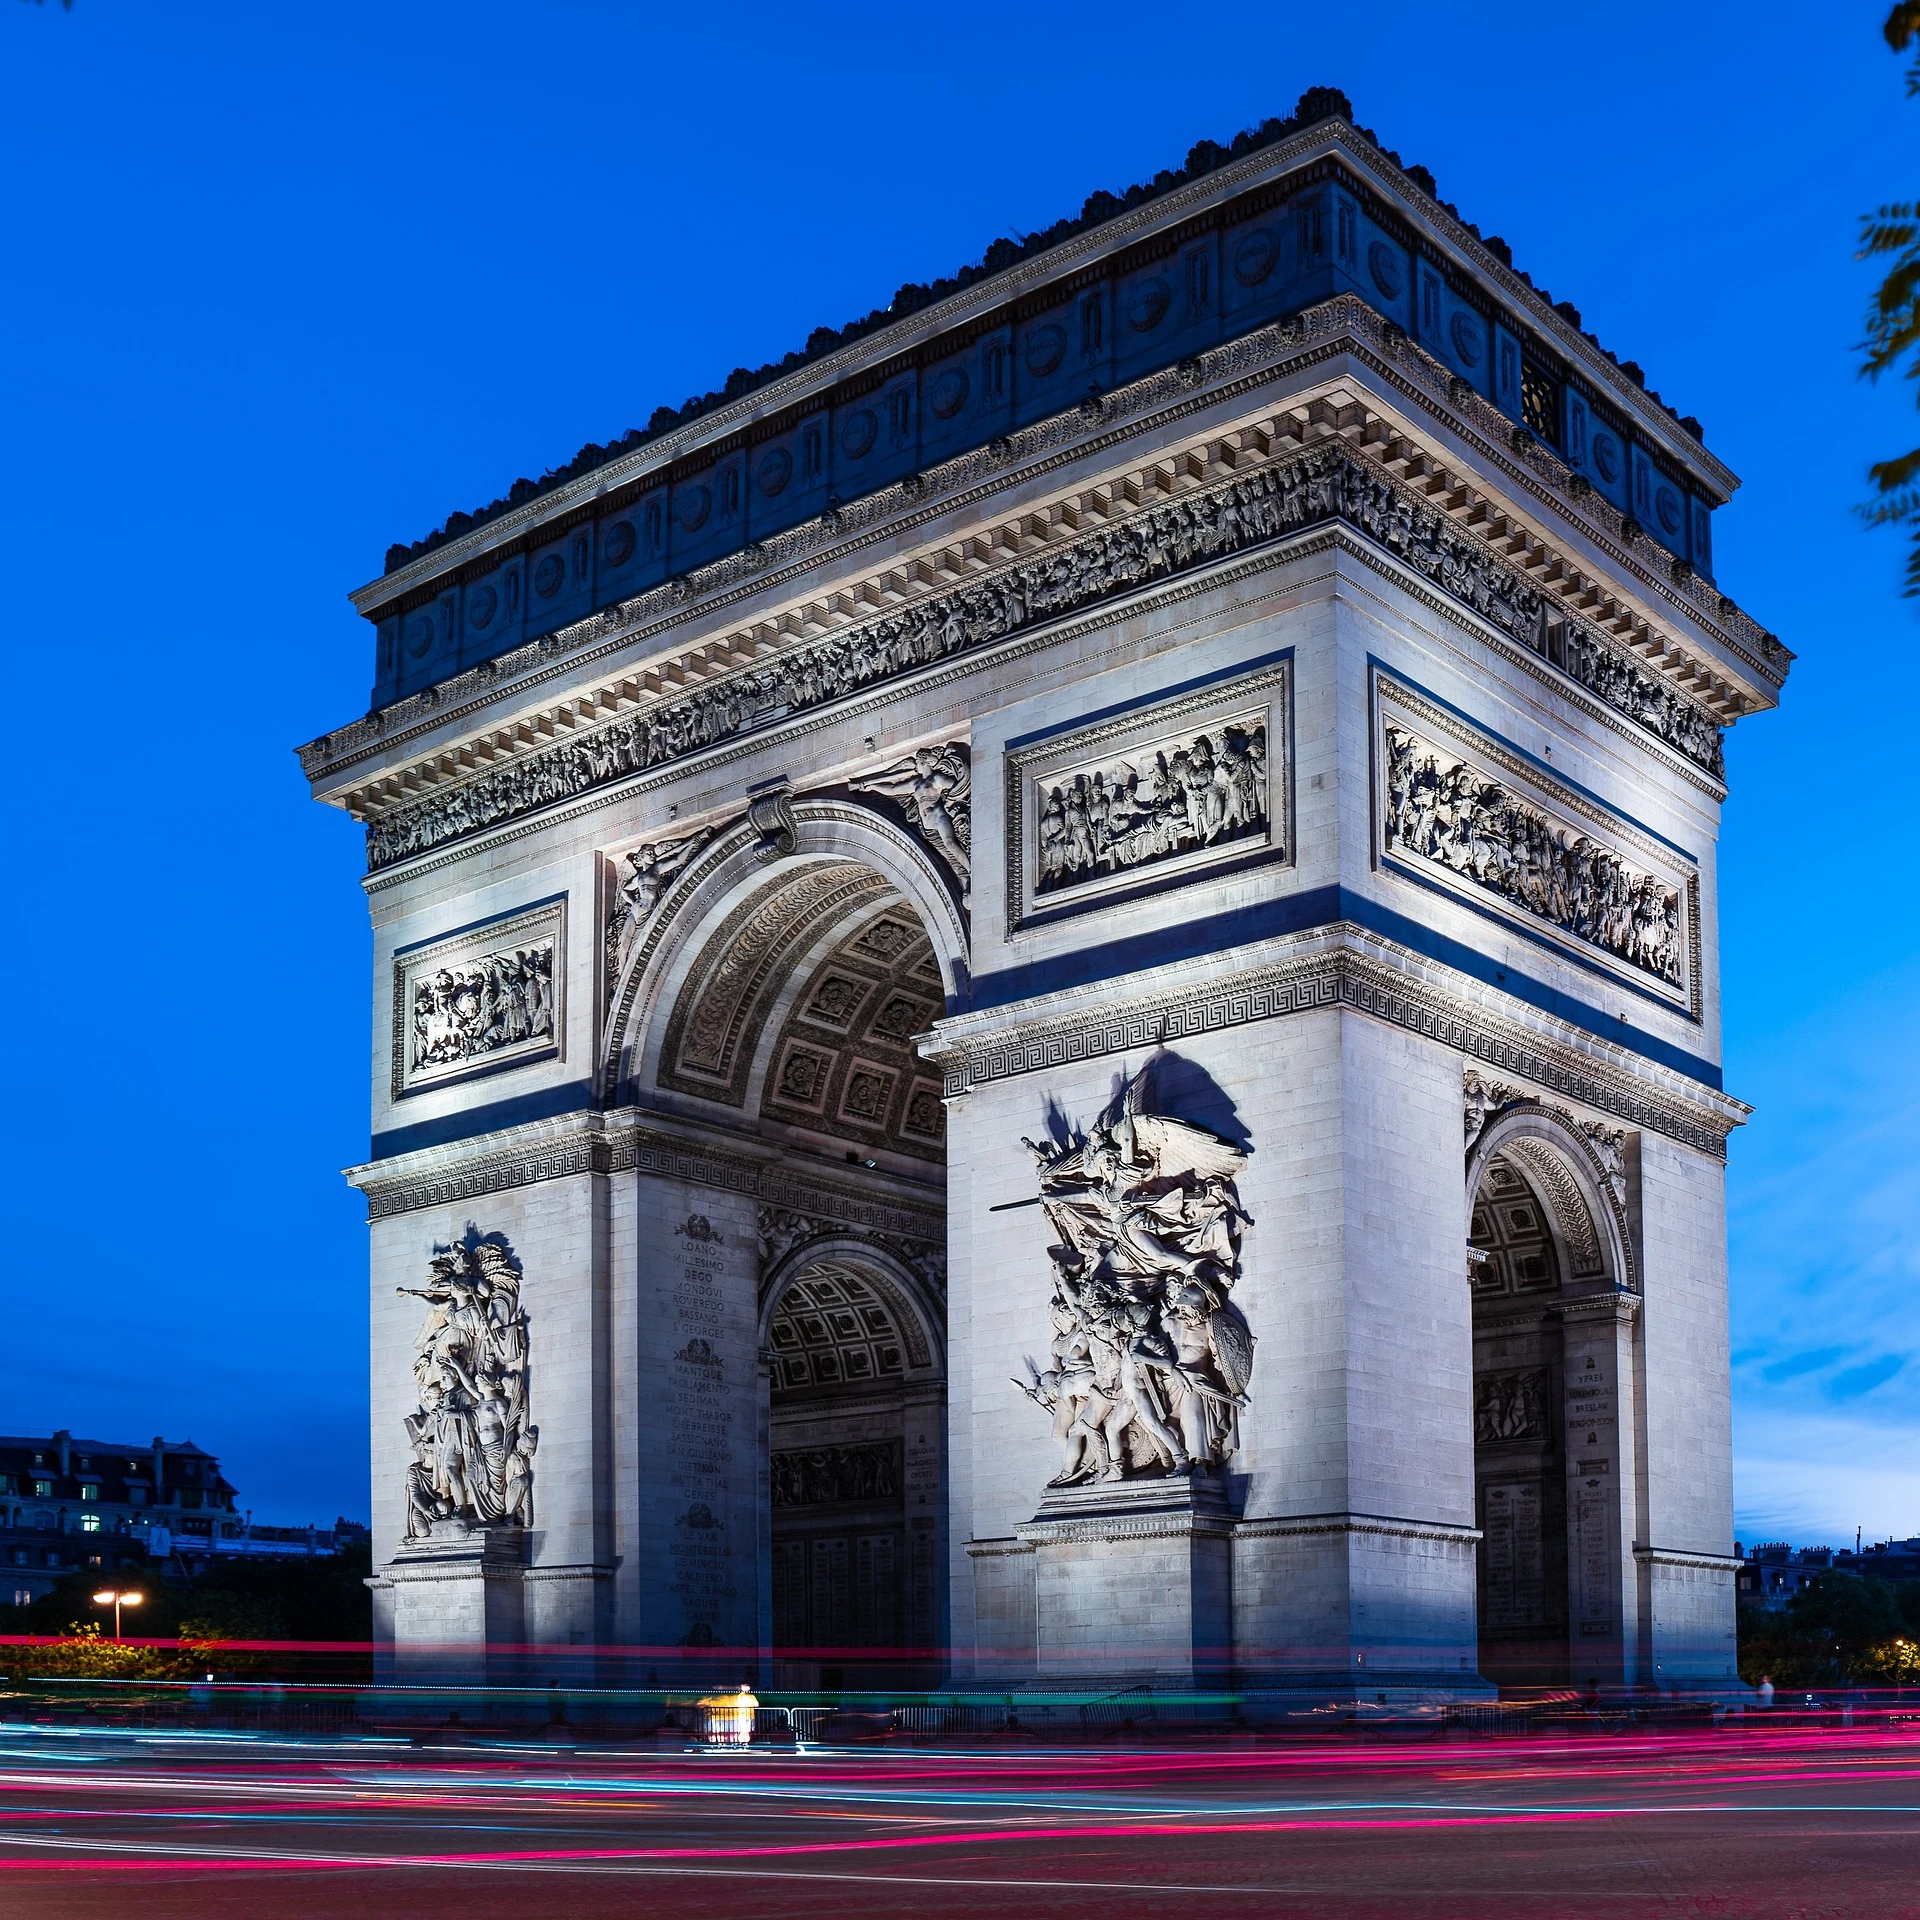 L'arc de triomphe à Paris. Photo choisie par monsieurdefrance.com depositphotos.